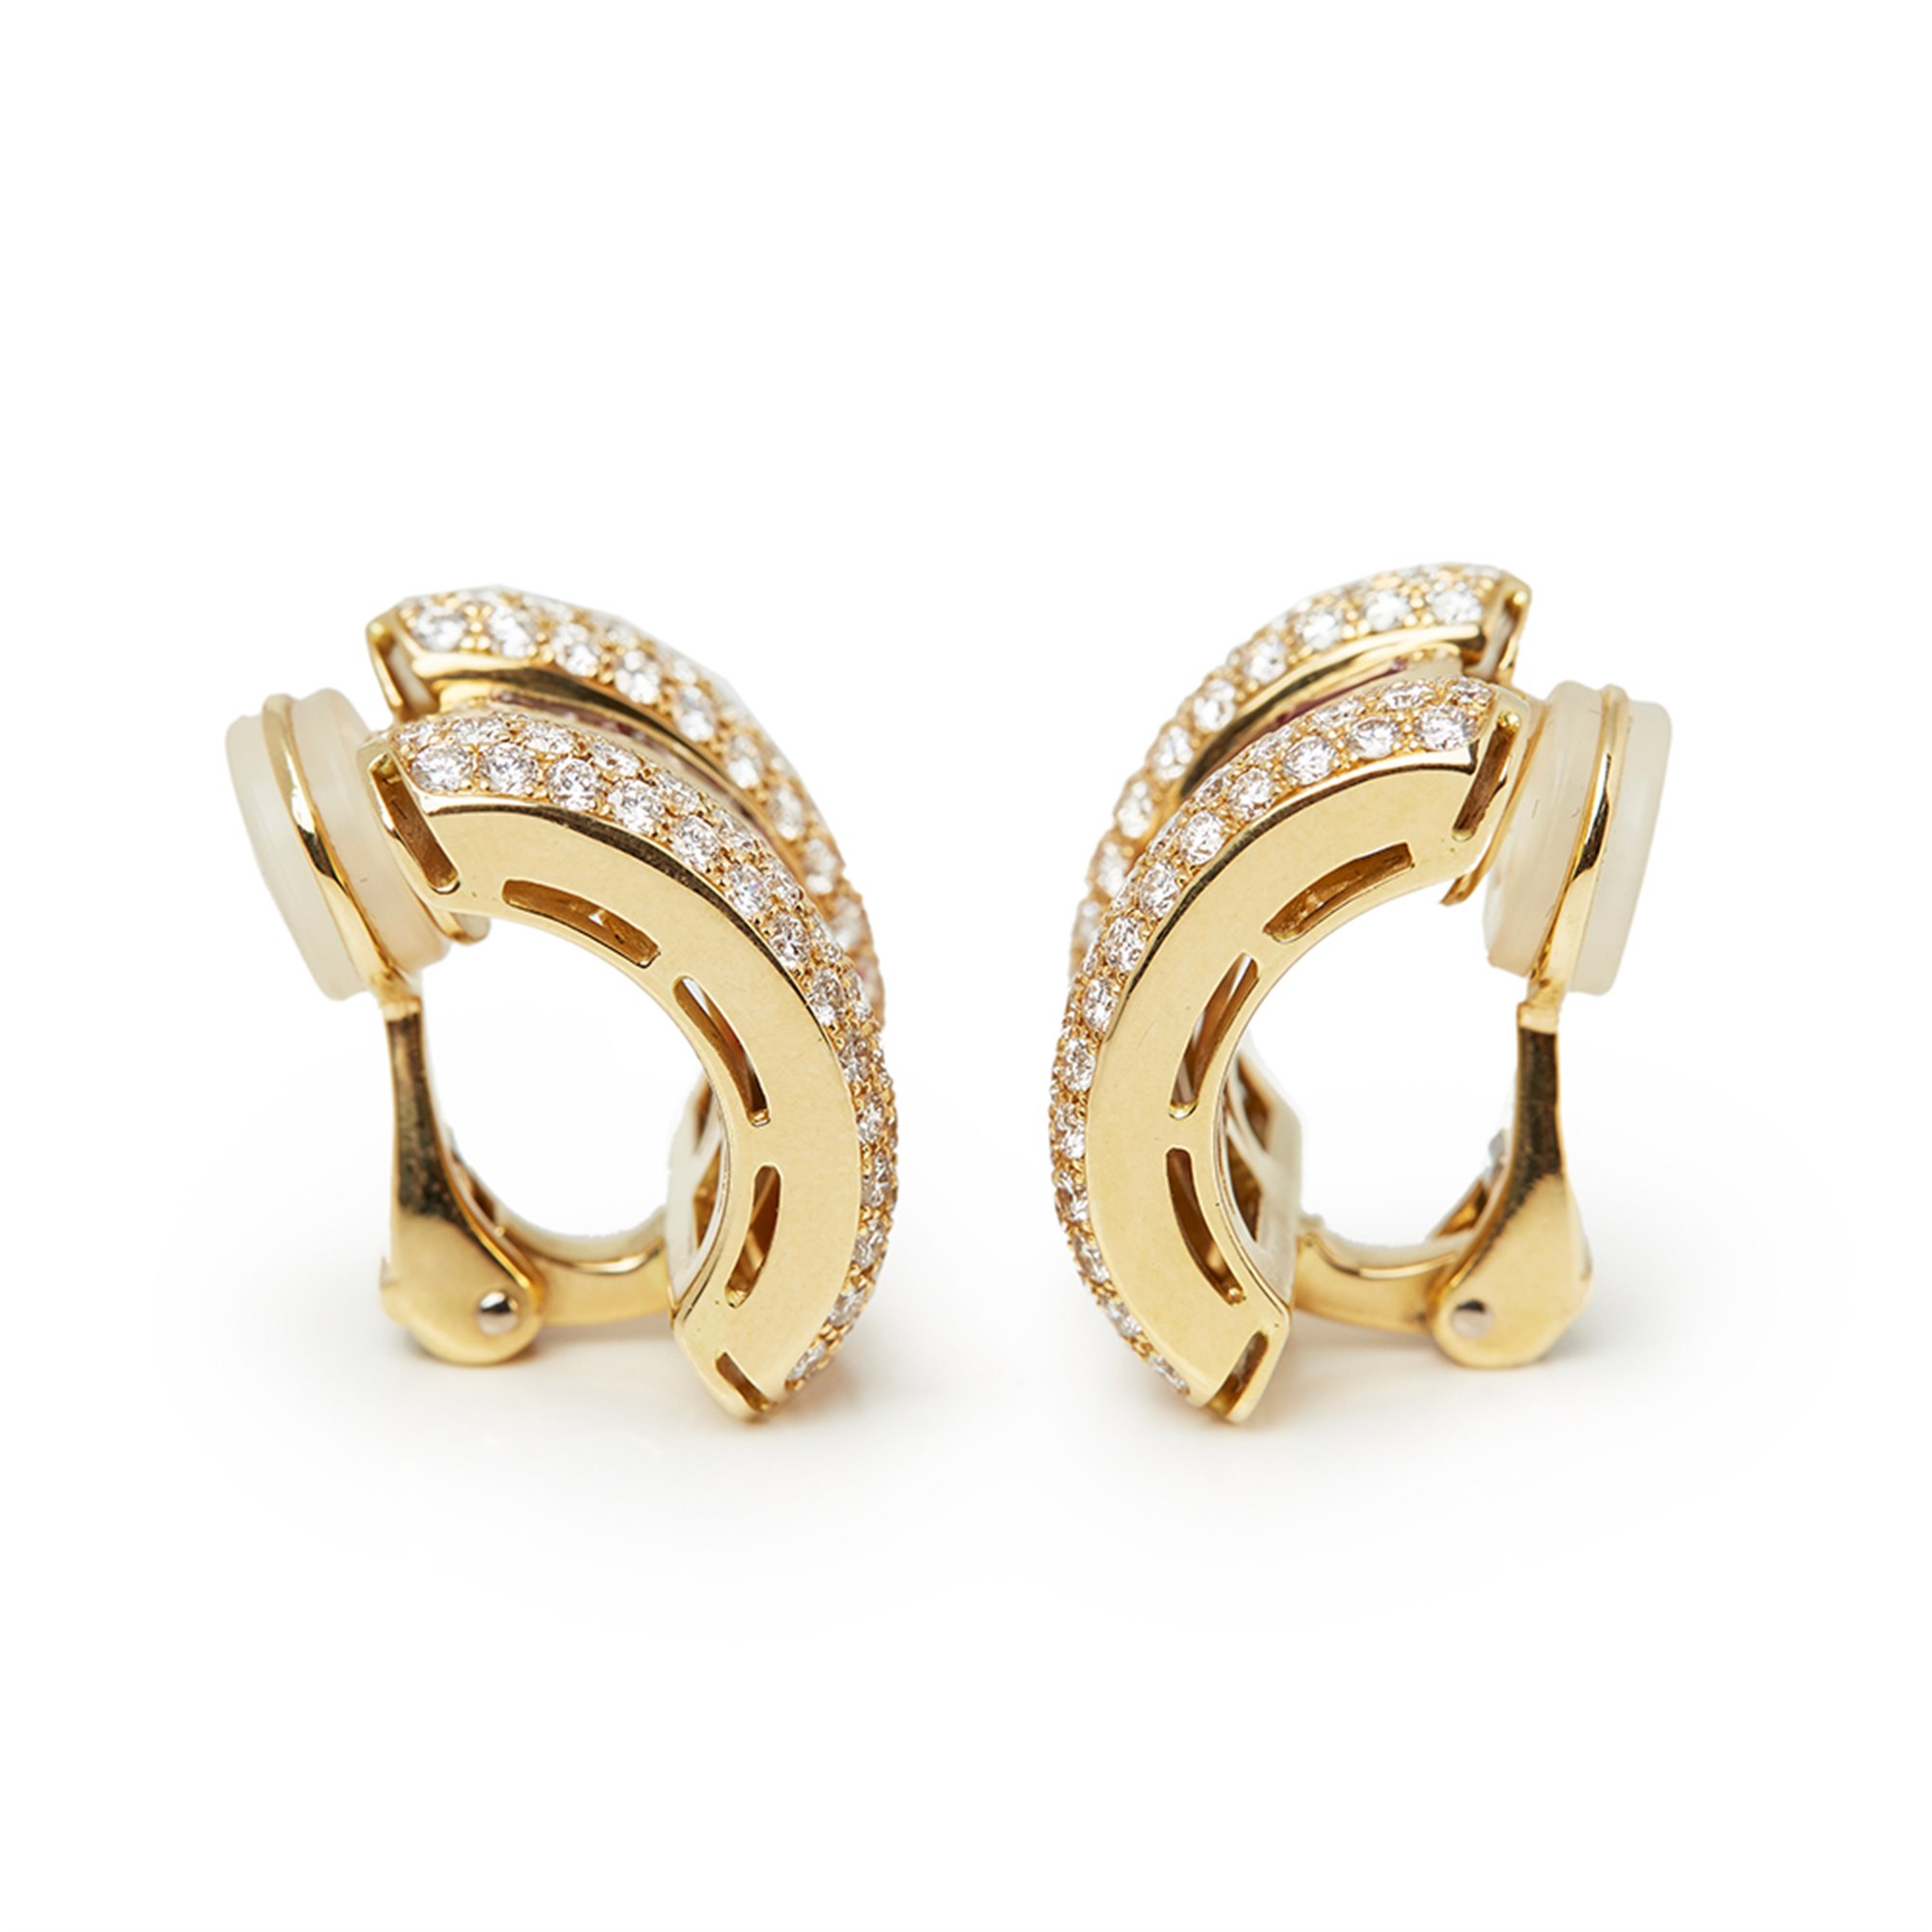 Chopard Ruby & Diamond La Strada Earrings